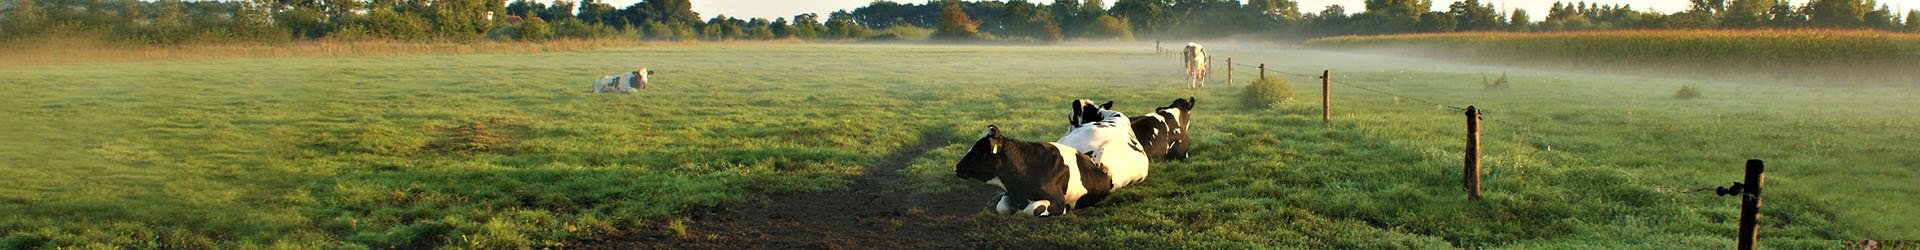 Weiland met koeien | Handelsonderneming Baan